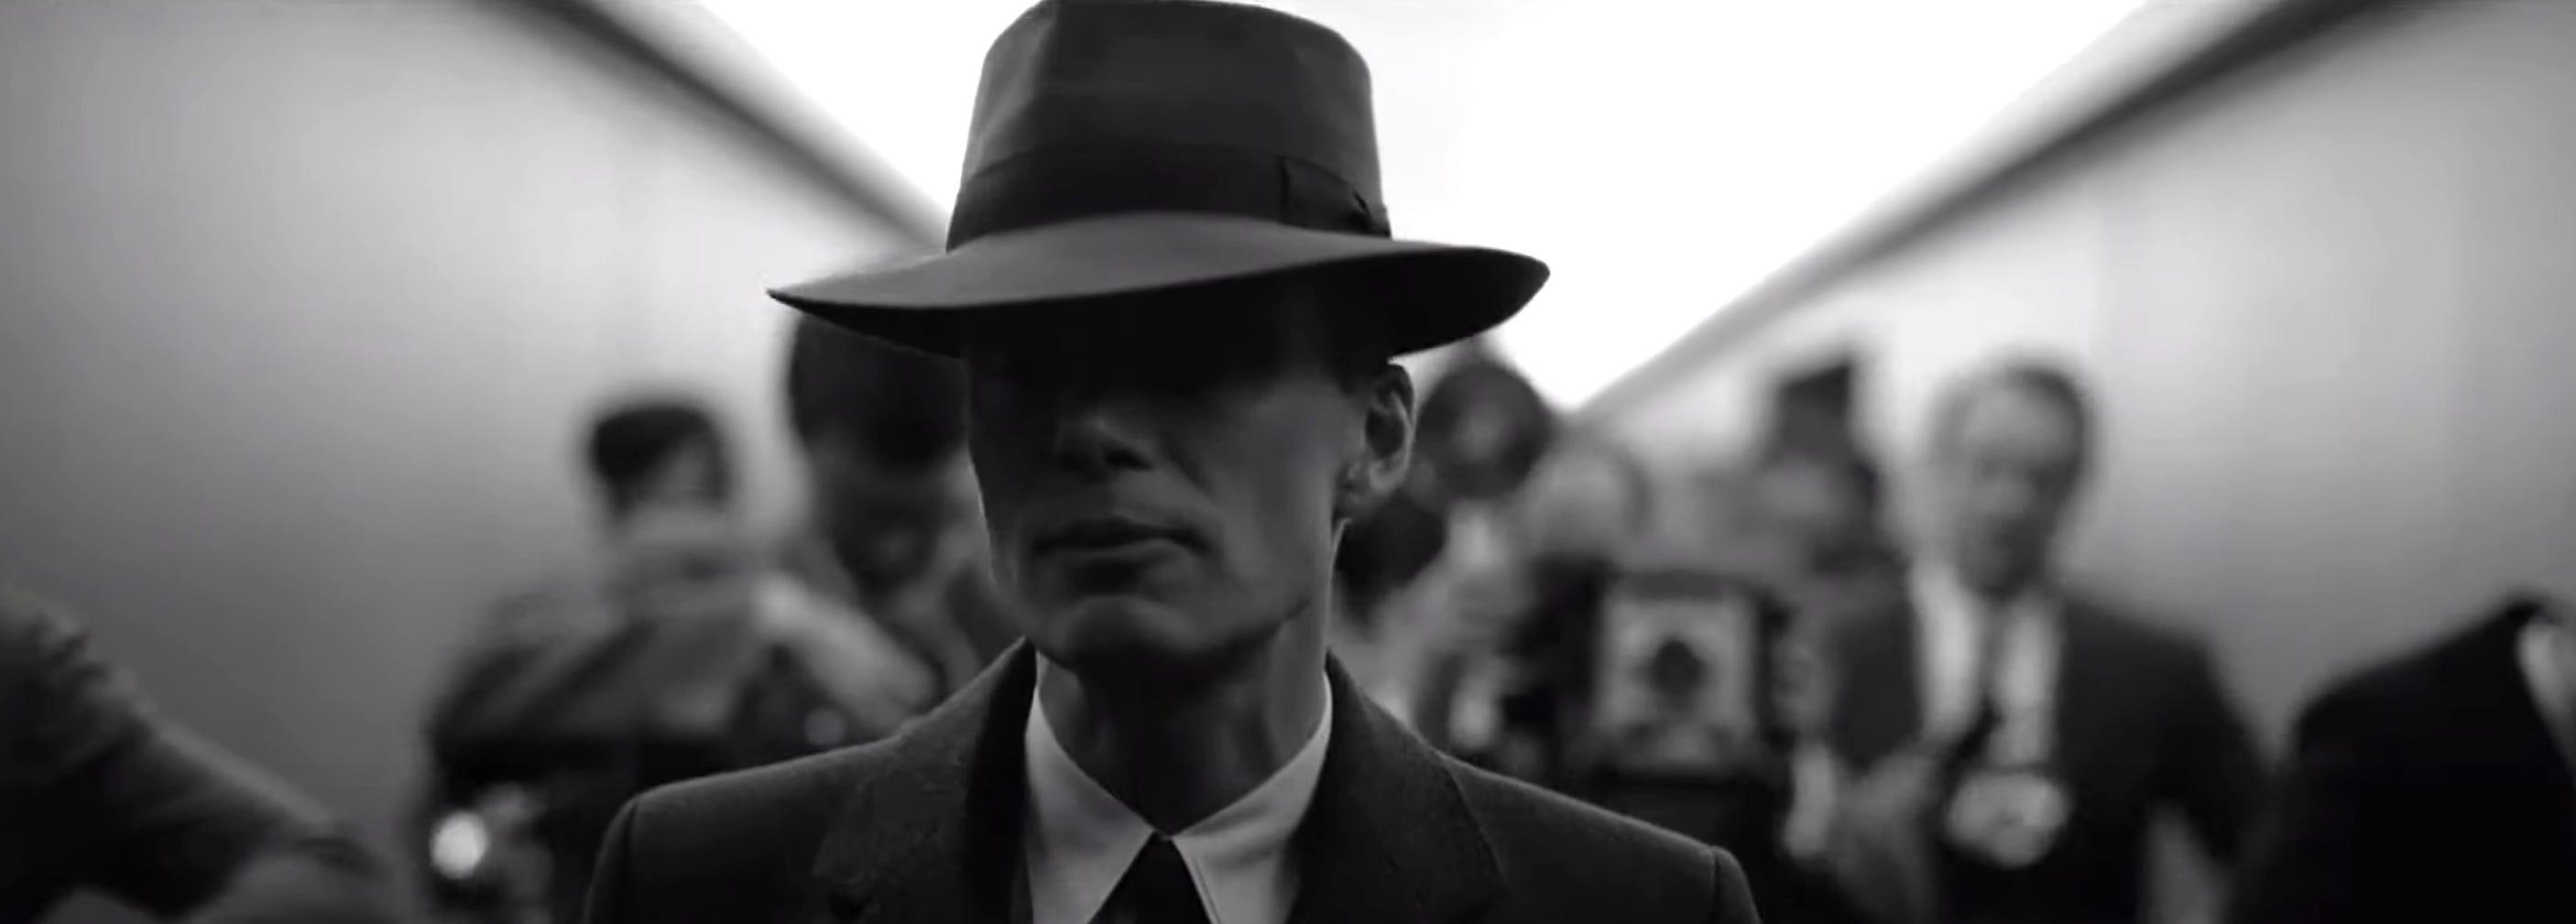 عکس خیلی زیبا از اوپنهایمر با کلاهی قشنگ روی سر آن 